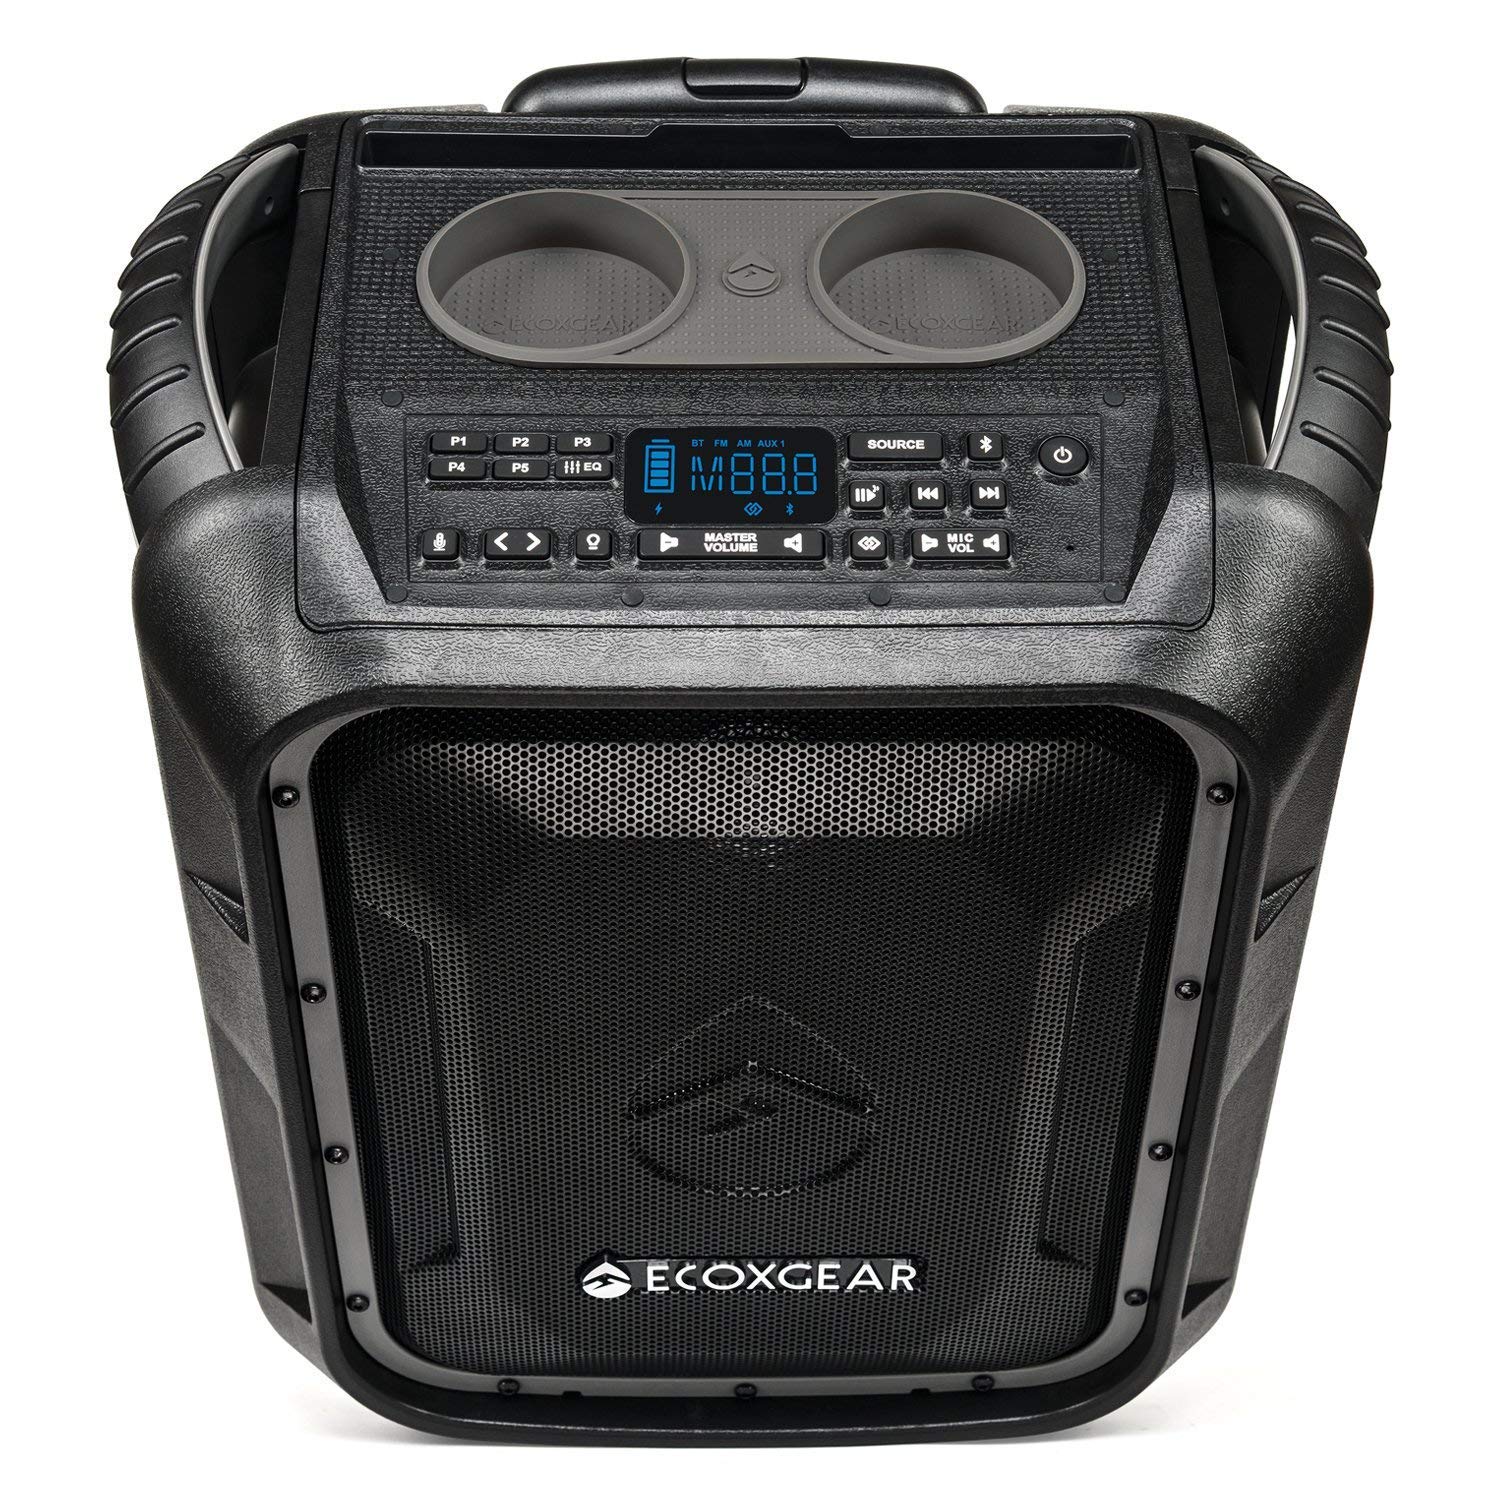 ECOXGEAR EcoBoulder+ GDI-EXBLD810 Robusto à prova d'água flutuante portátil Bluetooth sem fio de 100 watts alto-falante e sistema de PA (cinza)